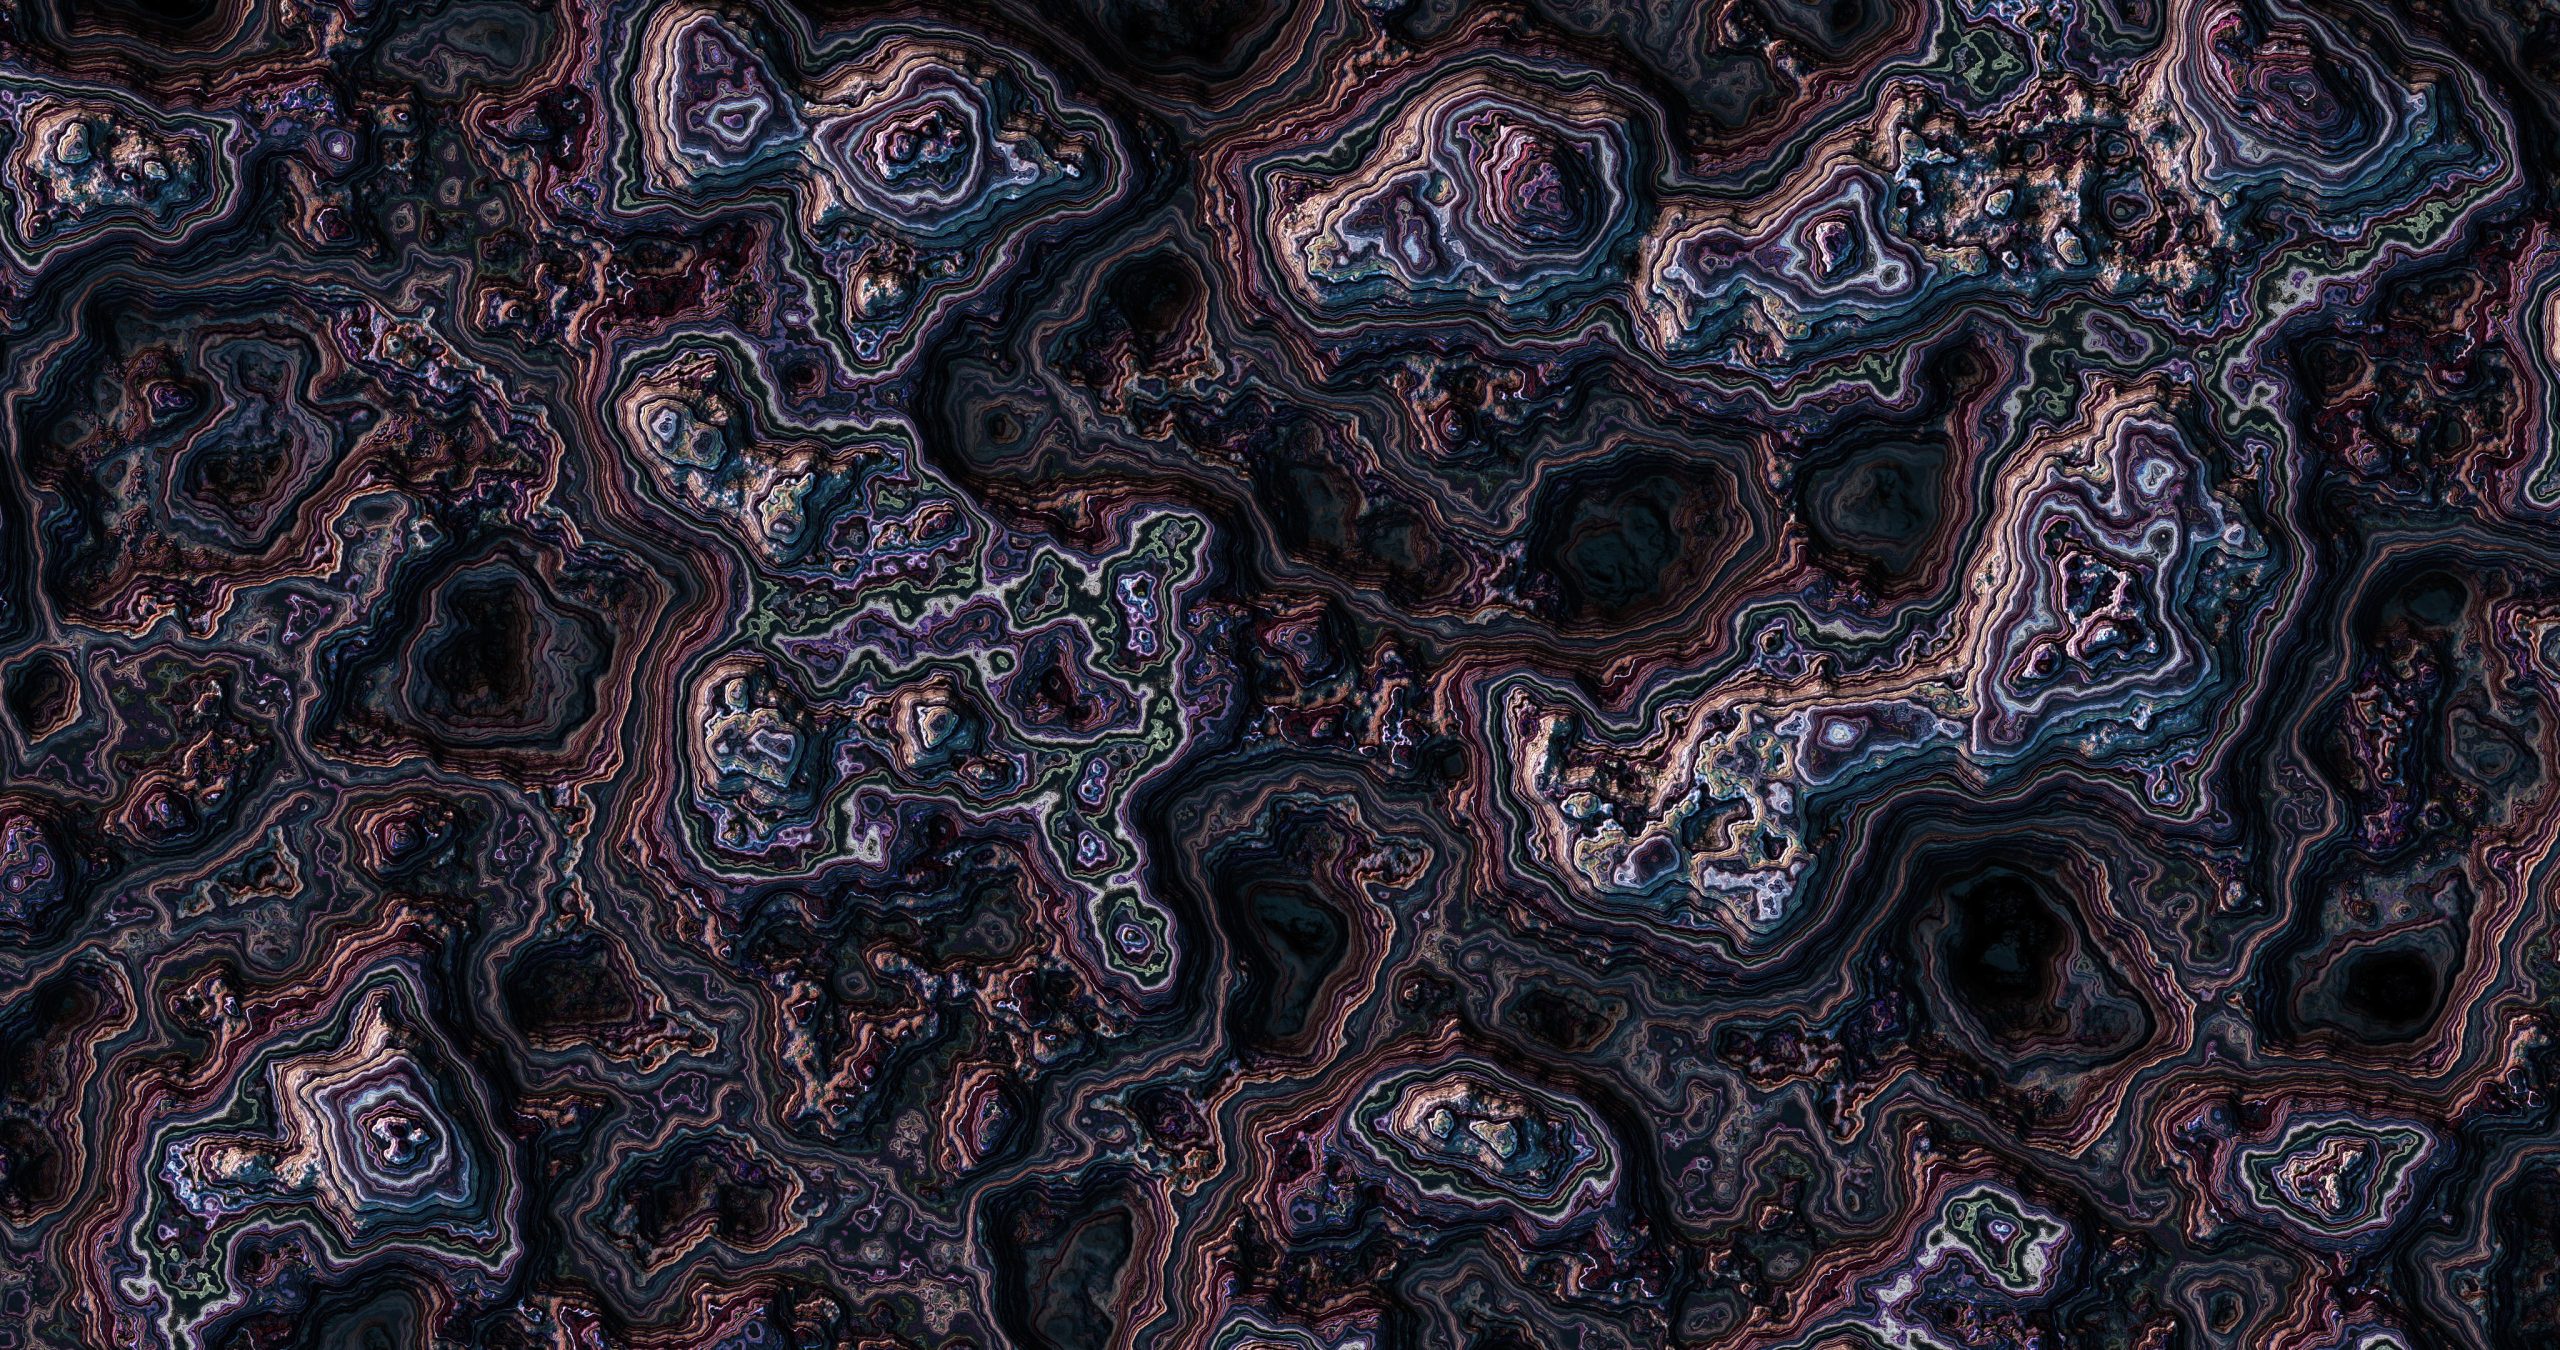 3D fractal wallpaper, digital art, abstract, artwork